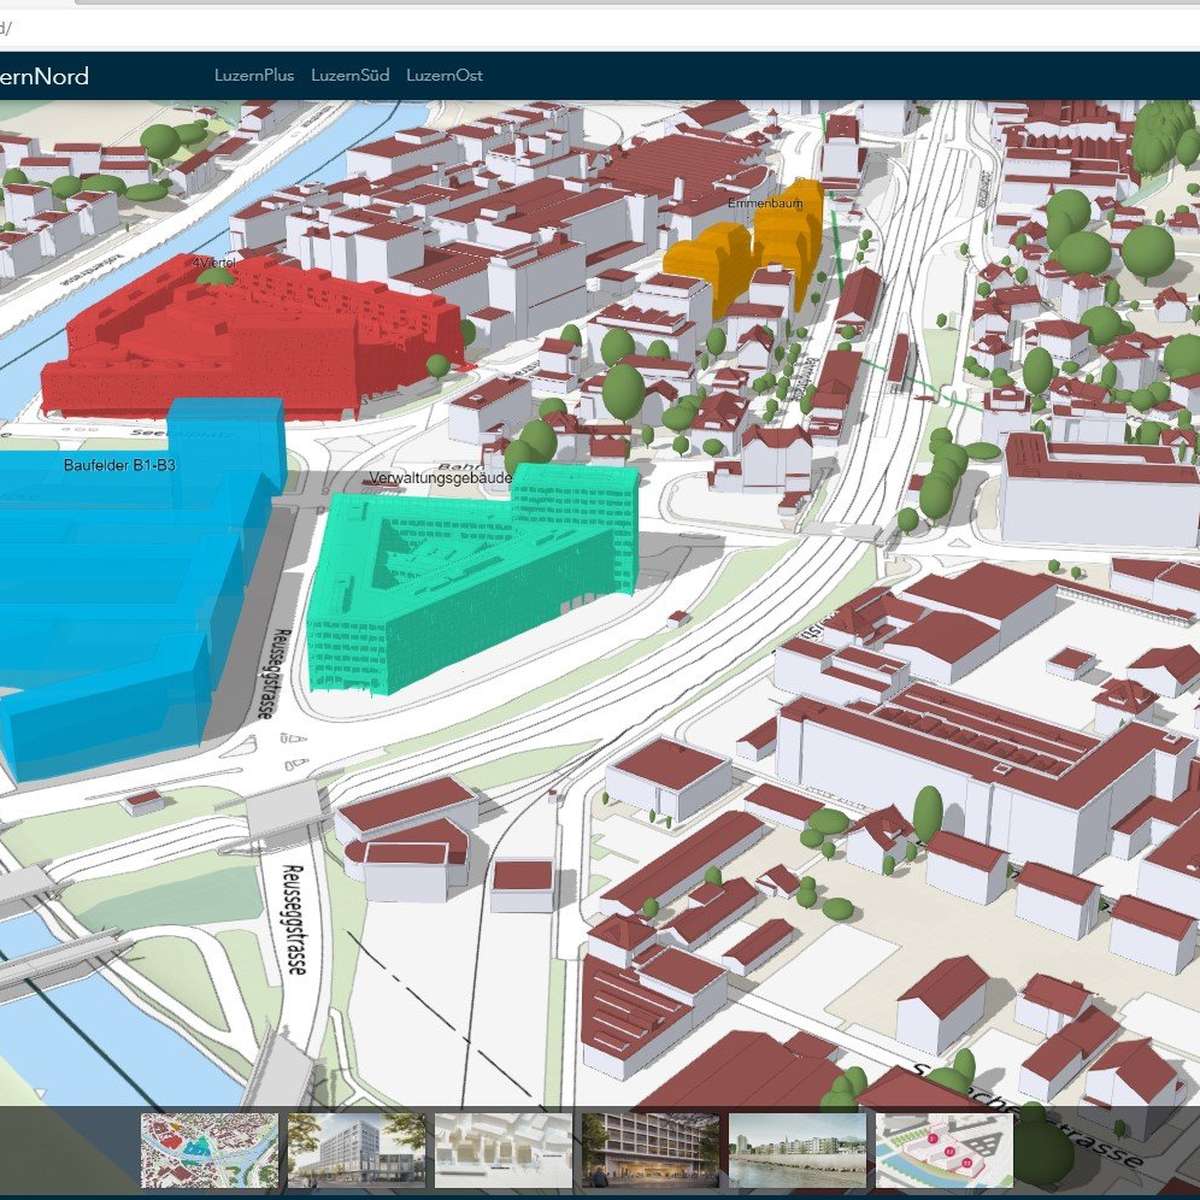 Nun kannst du Pläne im Kanton Luzern in 3D erkunden